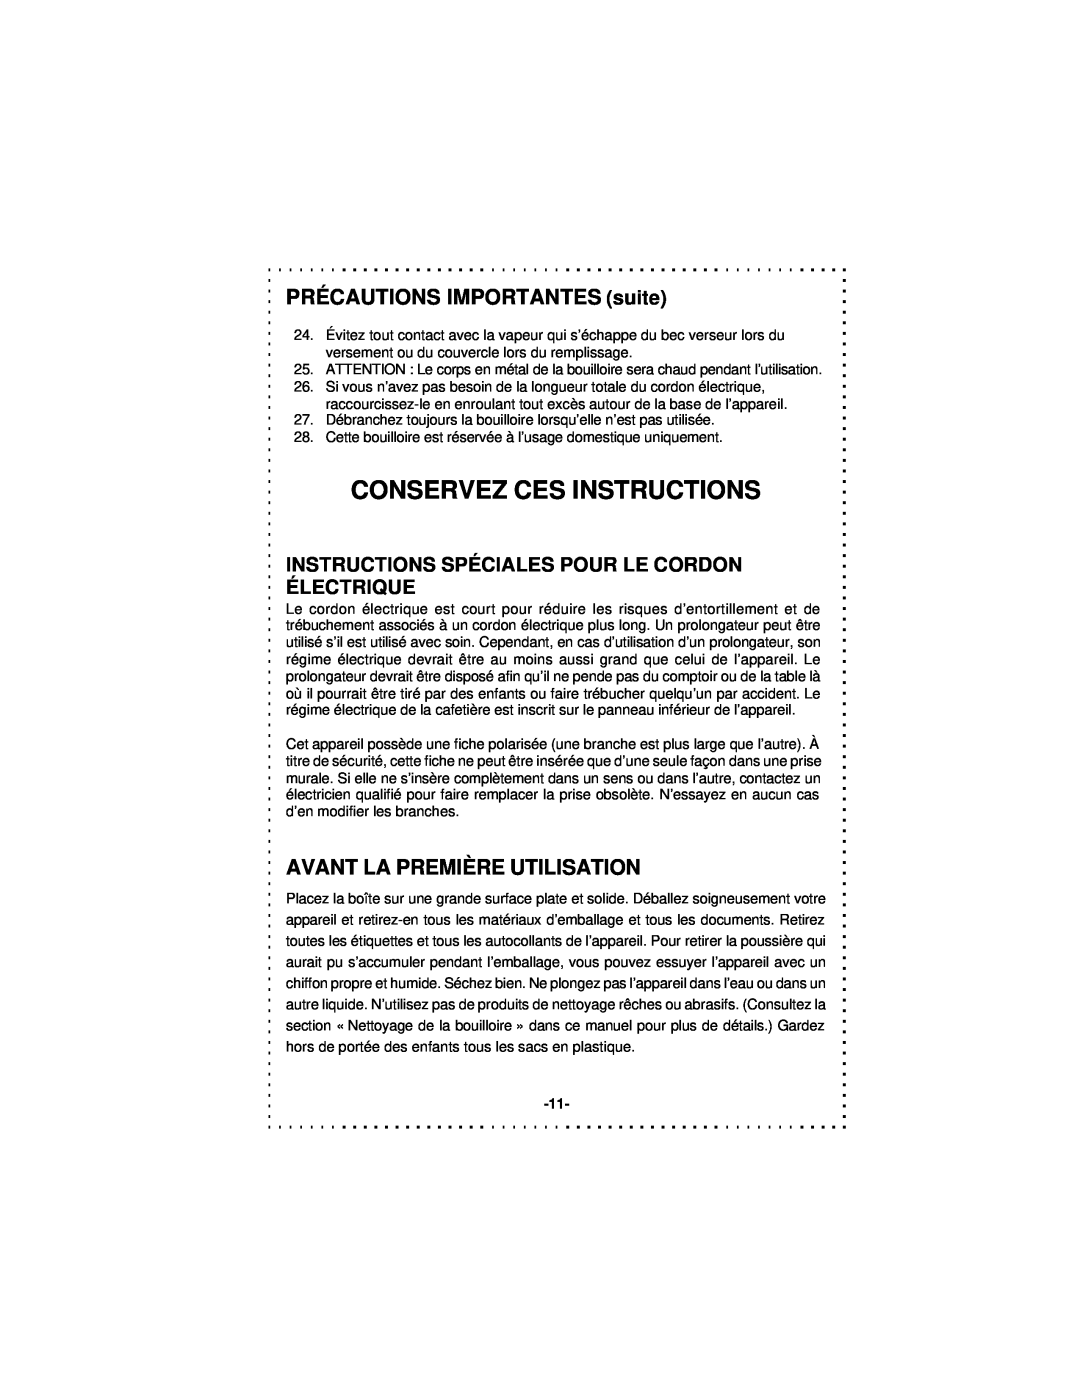 DeLonghi DSJ900 instruction manual Conservez Ces Instructions, PRÉCAUTIONS IMPORTANTES suite, Avant La Première Utilisation 